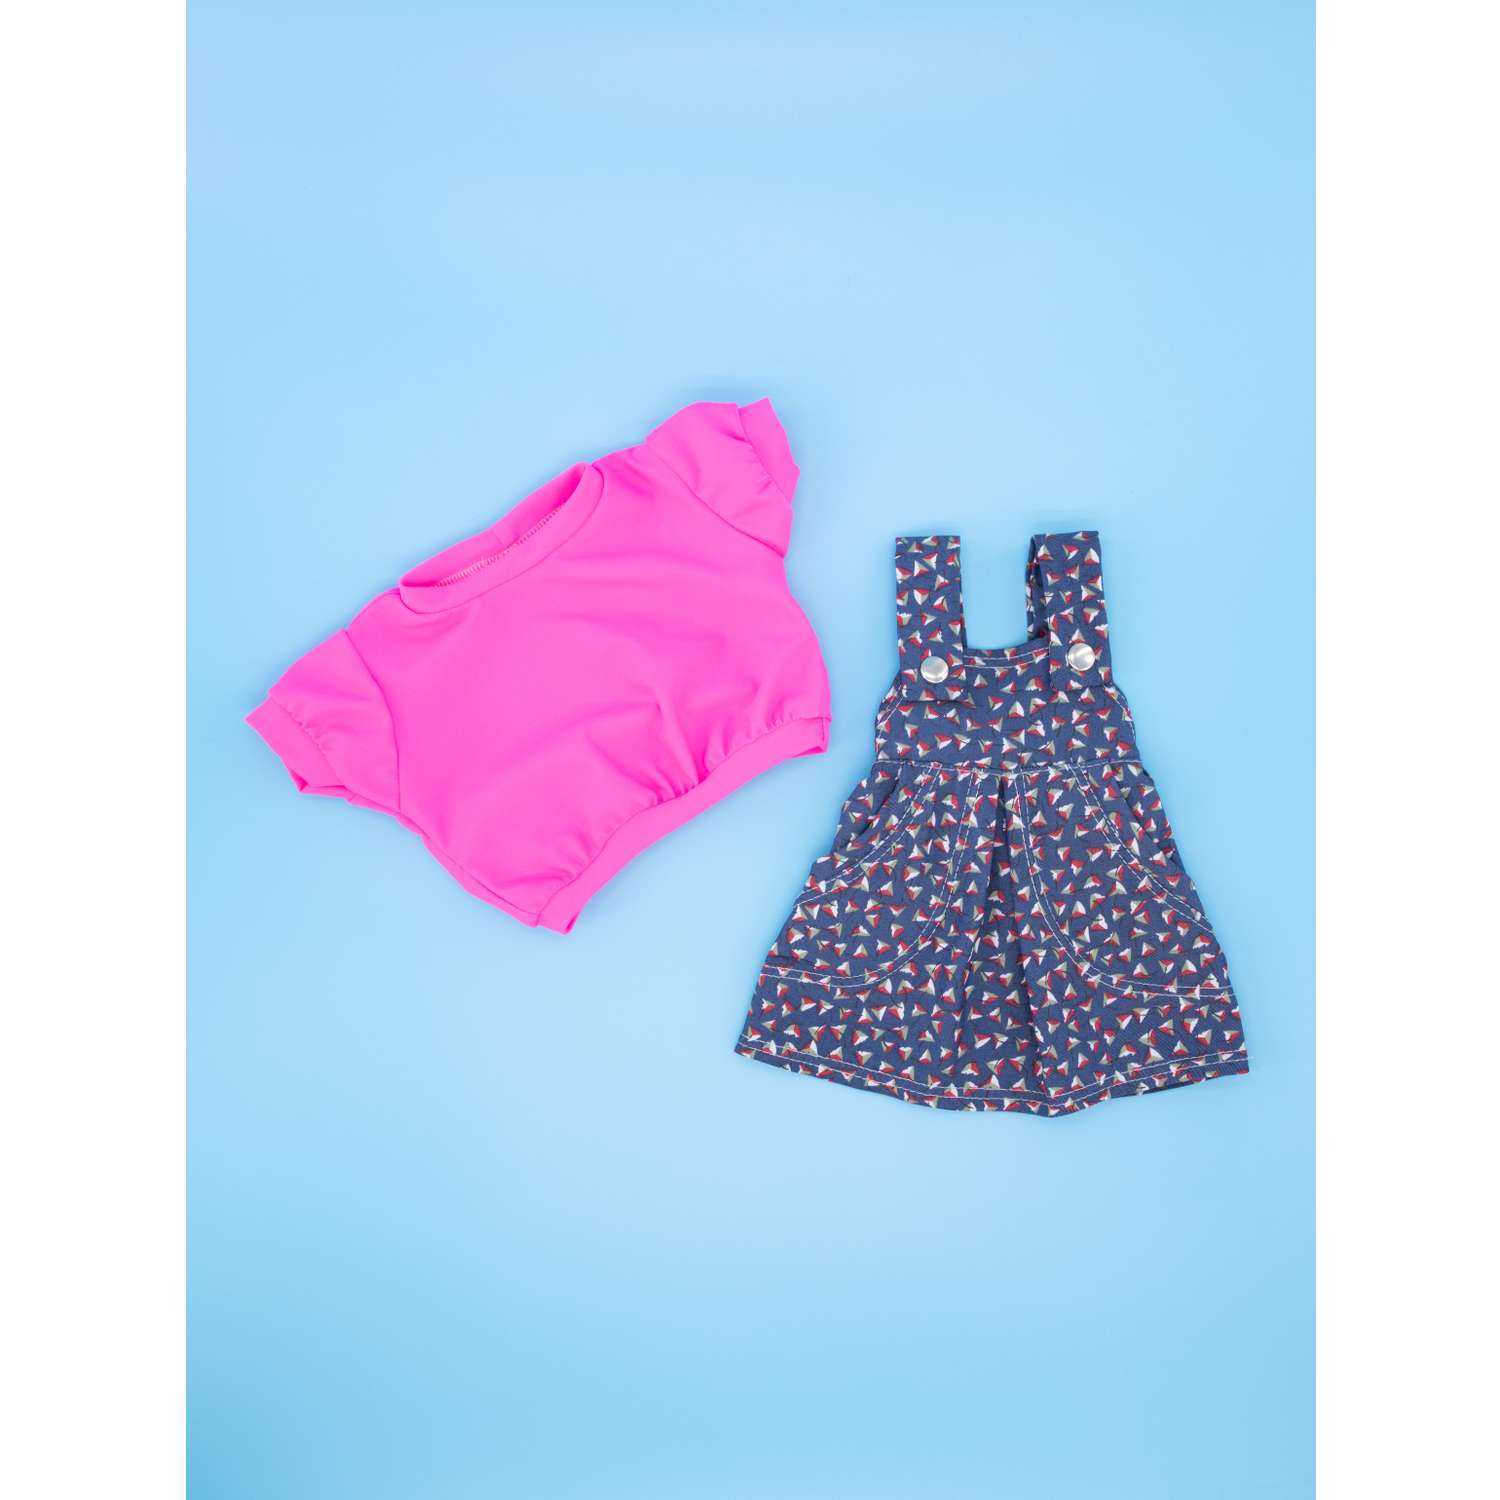 Джинсовый набор МОДНИЦА для пупса 43-48 см голубой-розовый 6111голубой&amp;розовый - фото 13